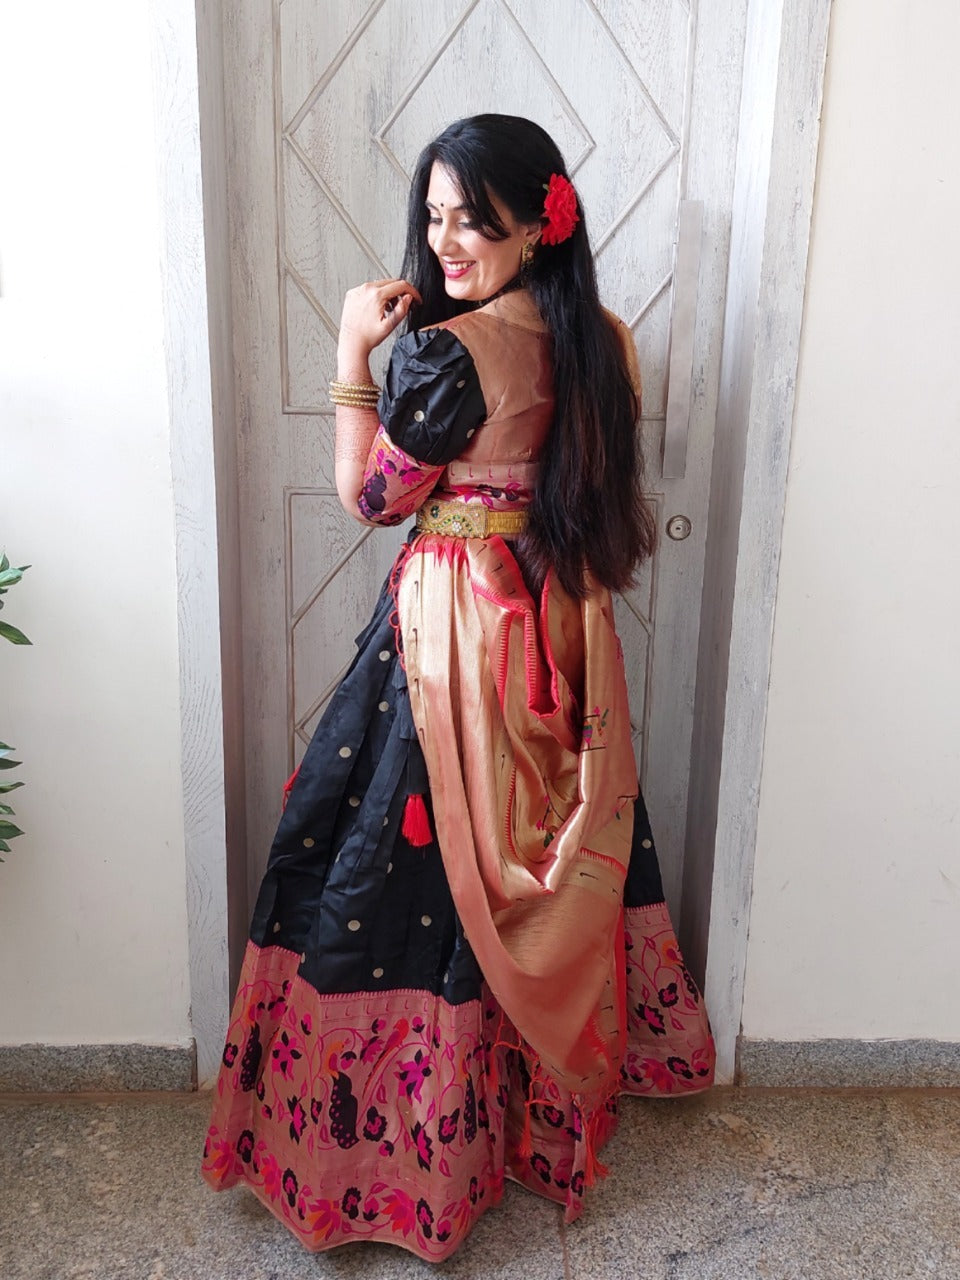 Traditional Style Paithani Based Designer Bridal Lehenga Choli for Weddings  | The Silk Trend